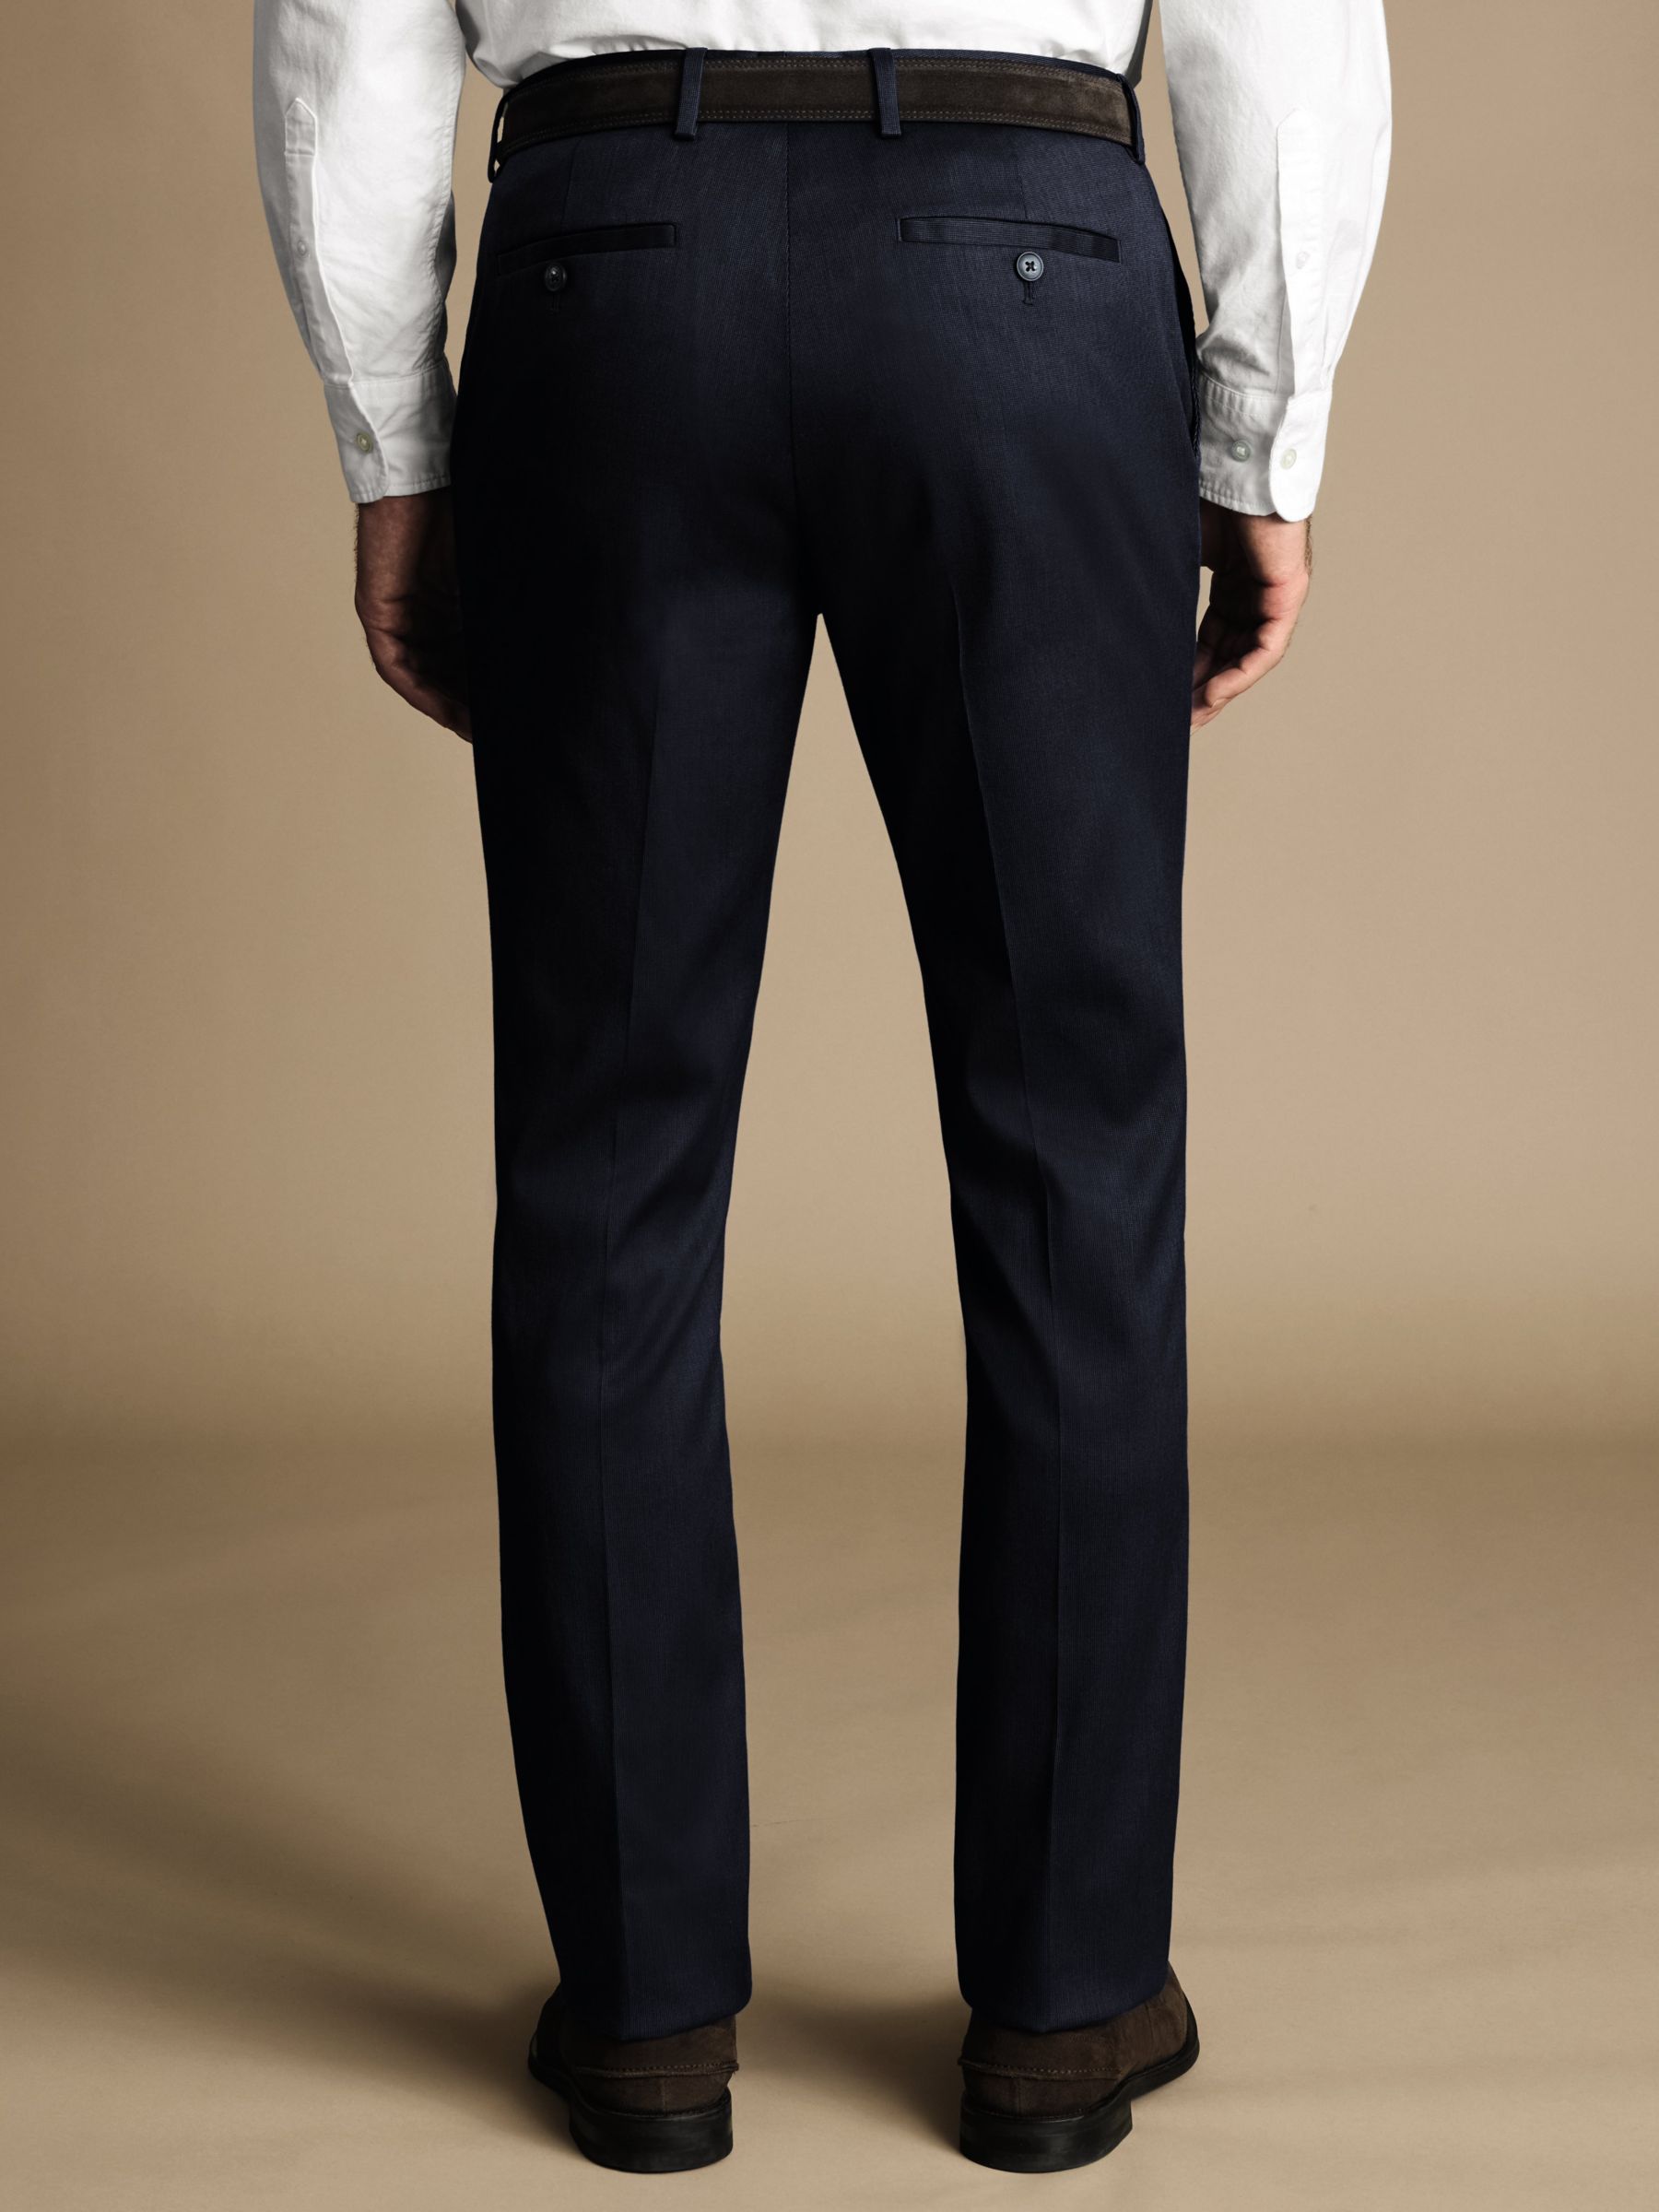 Charles Tyrwhitt Smart Texture Classic Fit Trousers, Denim Blue, W38/L32